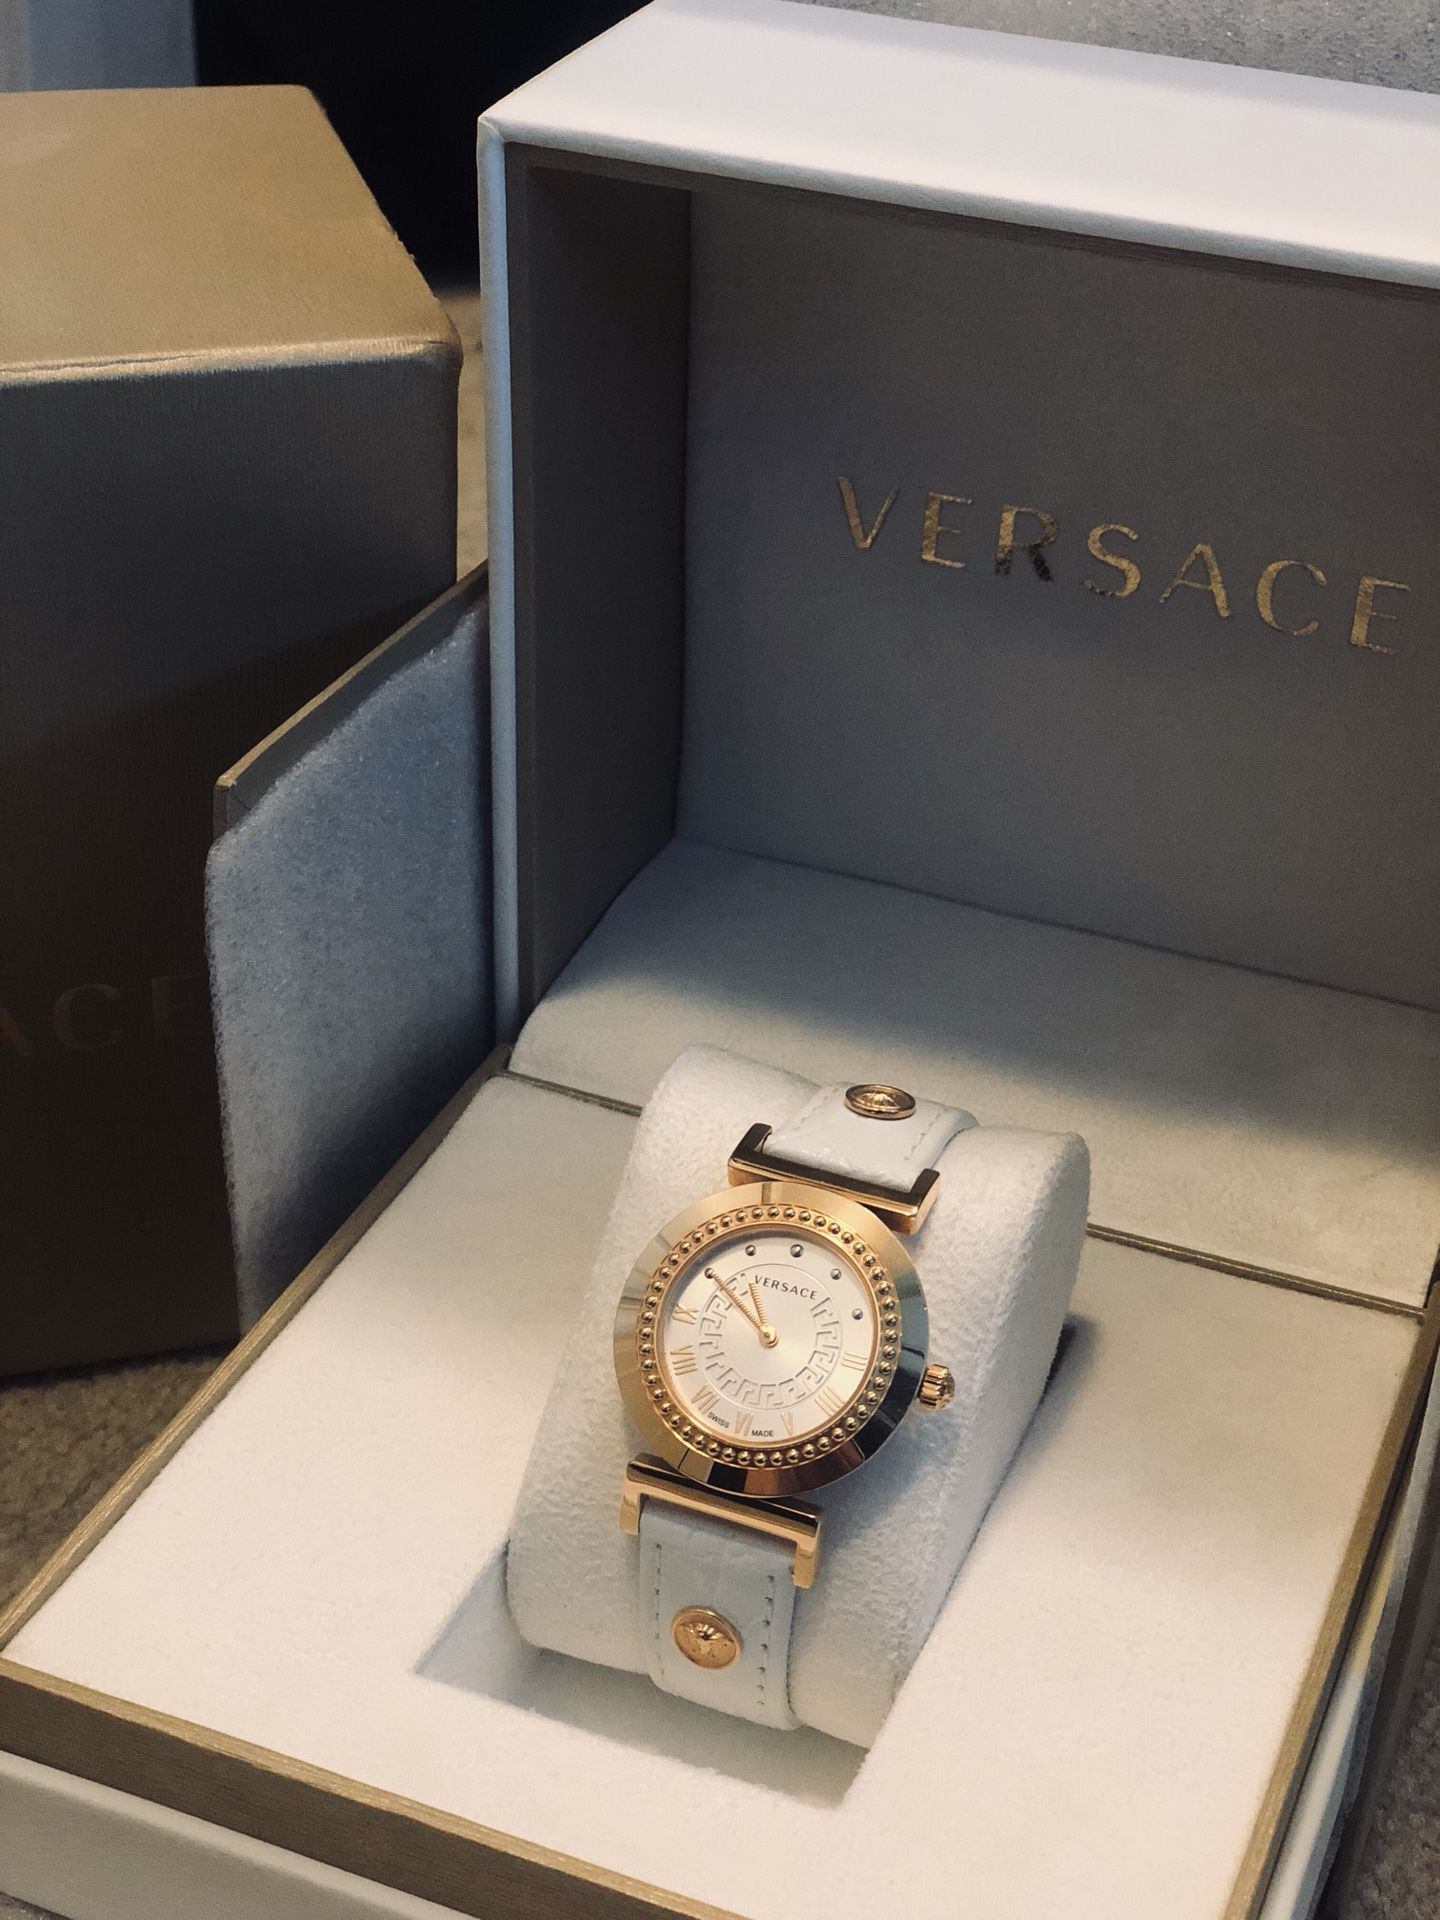 Versace women’s watch